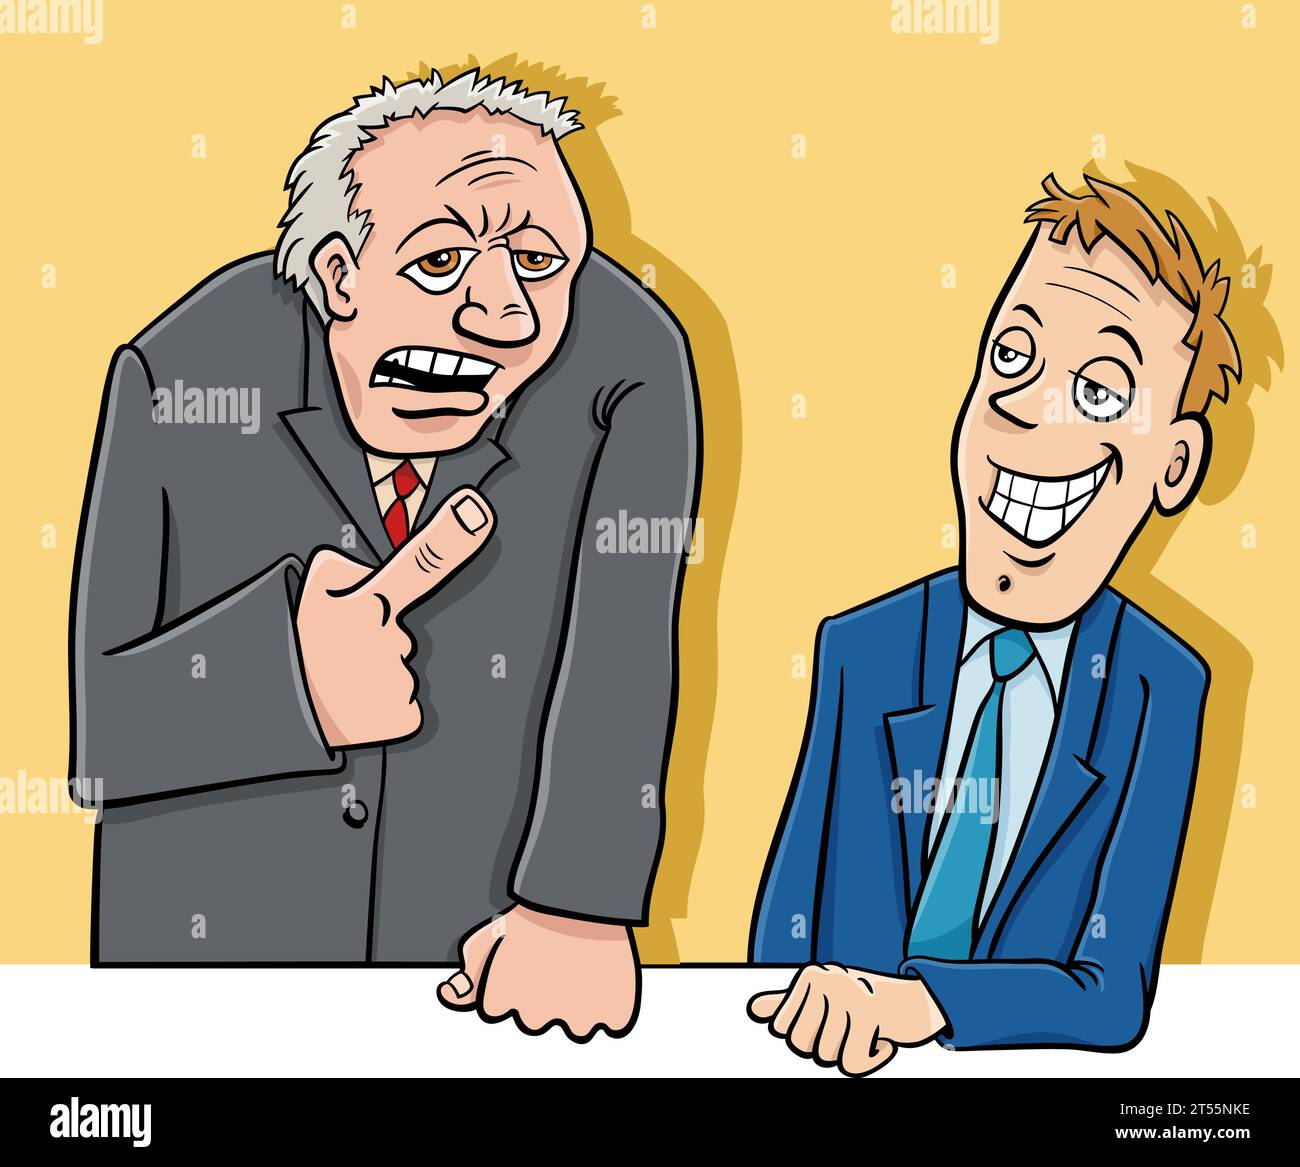 Comic-Illustration von zwei Männern oder Geschäftsleuten, die eine Diskussion oder Debatte führen Stock Vektor